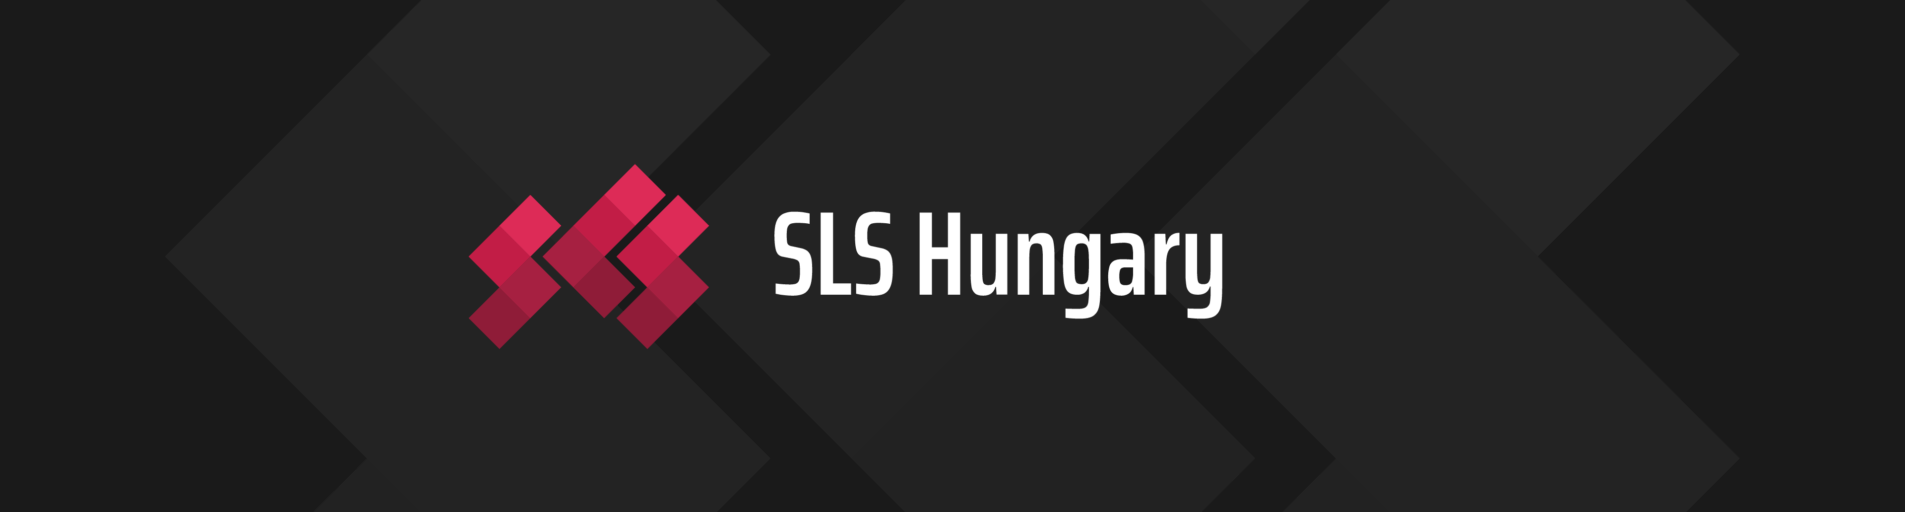 SLS Hungary